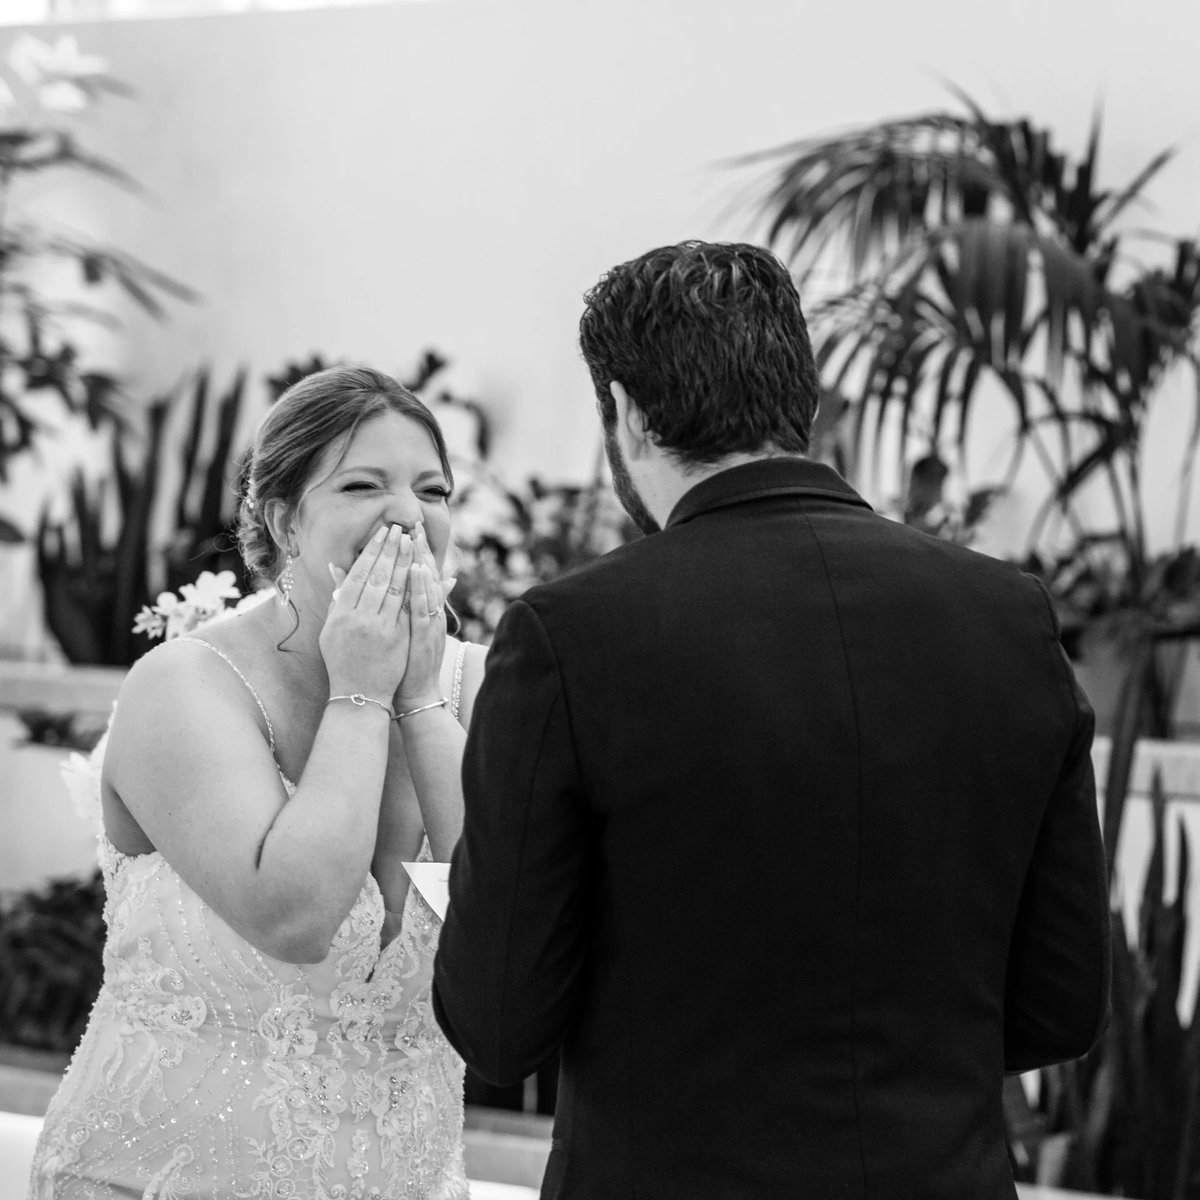 SNEAK PEEK from Zach + Caitlin's wedding ceremony this weekend at the @NewportMarriott!
📍@cterry17 @newyorklace @josabank #withyourmemoriesinmind #newportwedding